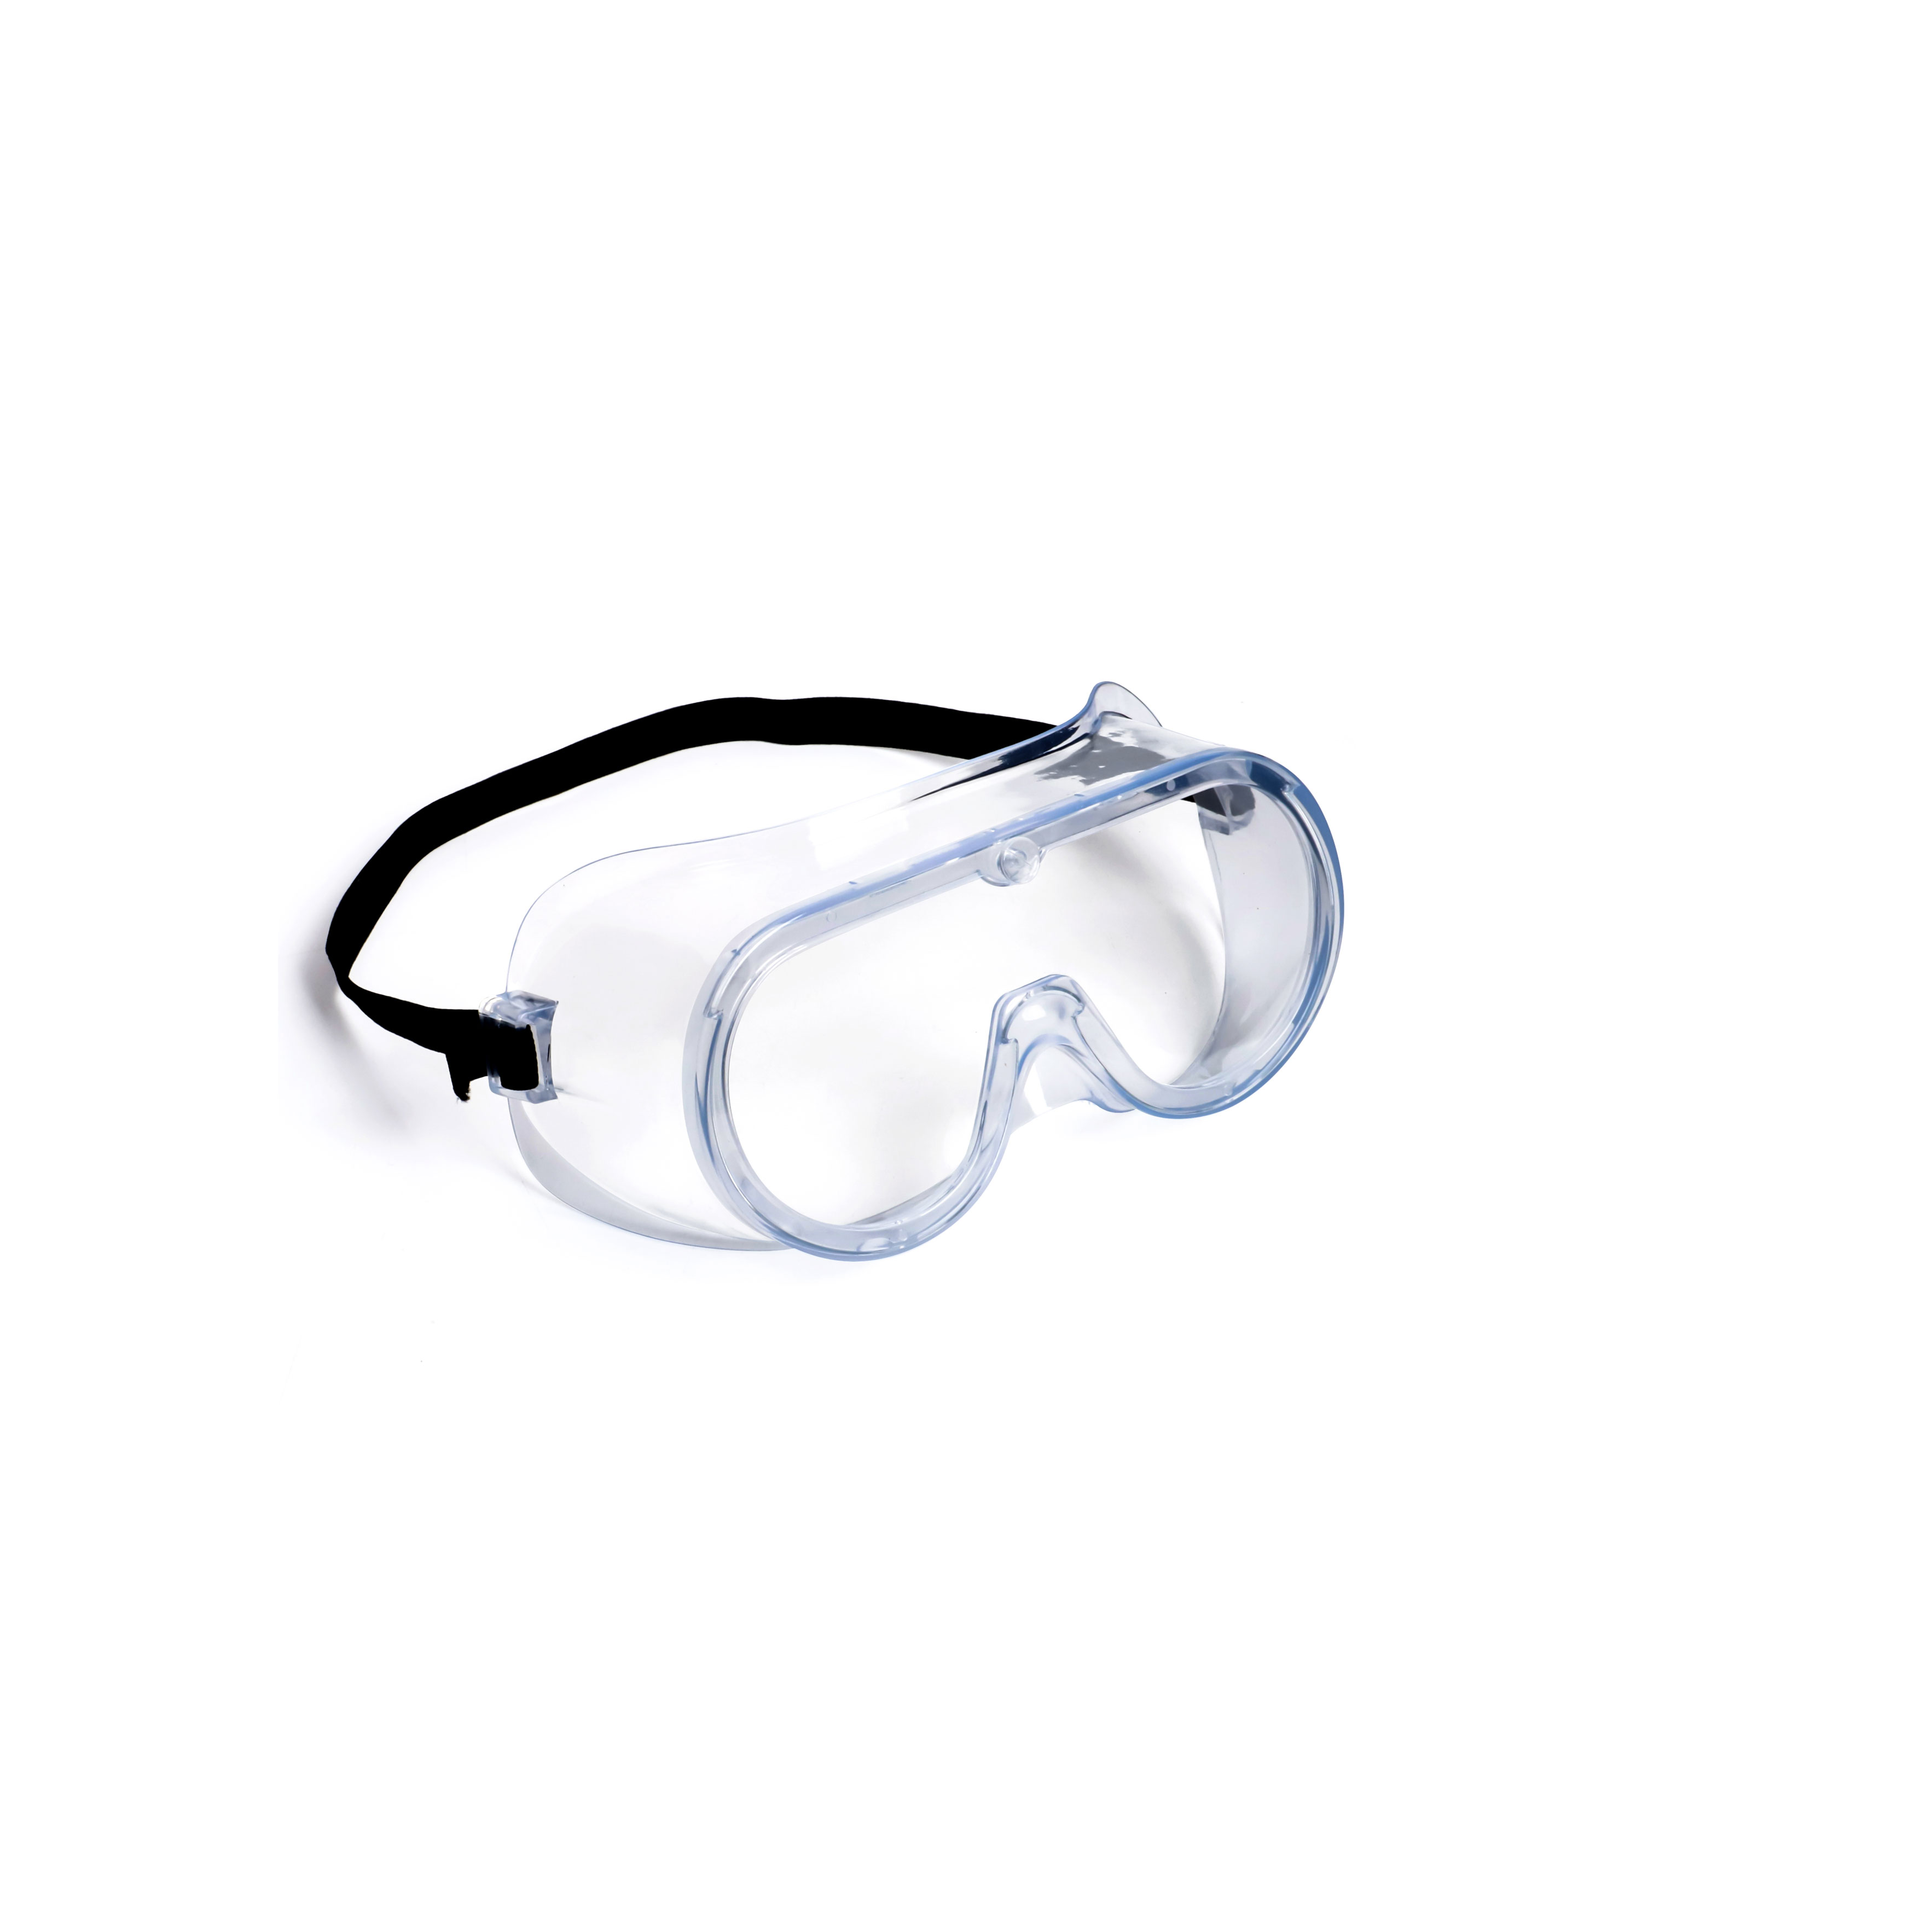 医用护目镜 医用防护面罩生产厂家 ce,fda双证-珠海天润健康科技有限